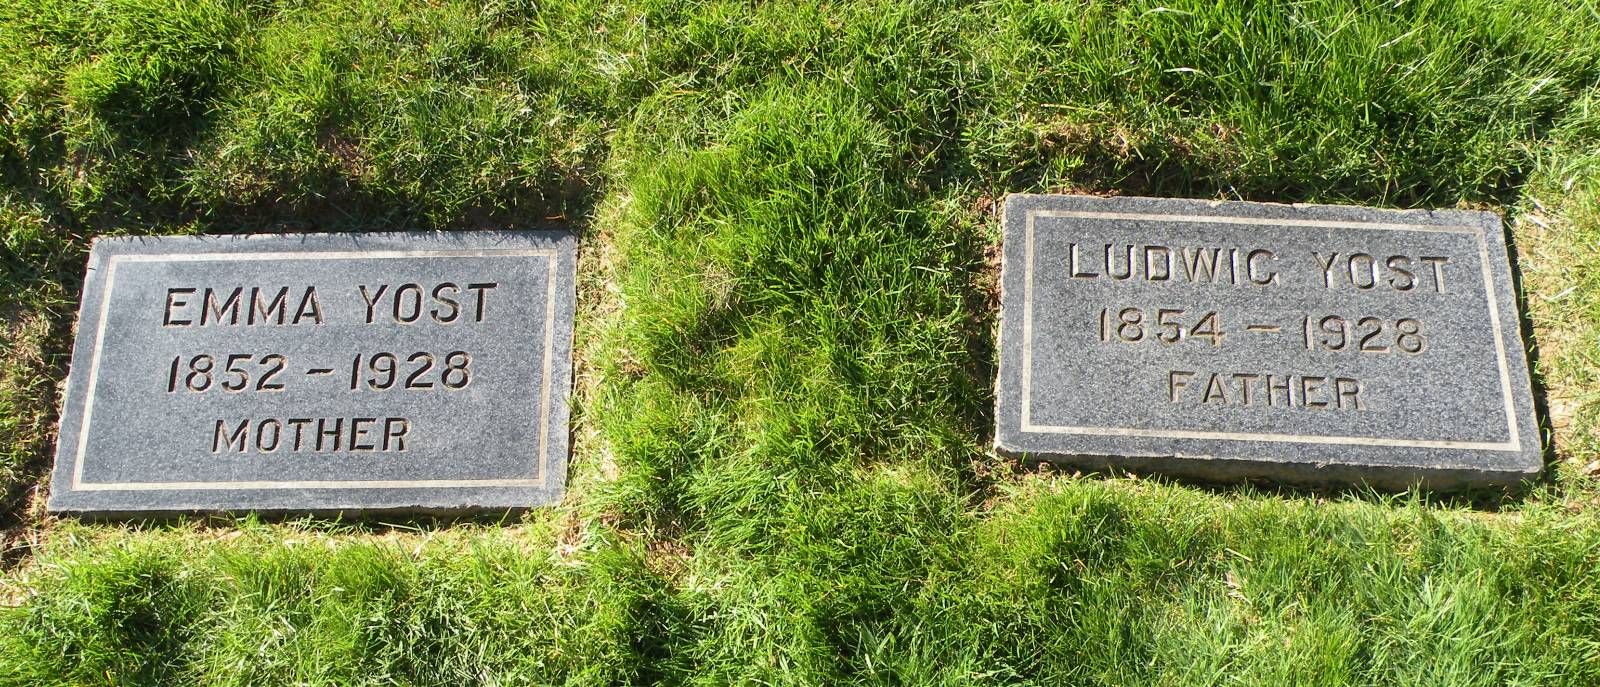 Emma and Ludwig Yost headstones.